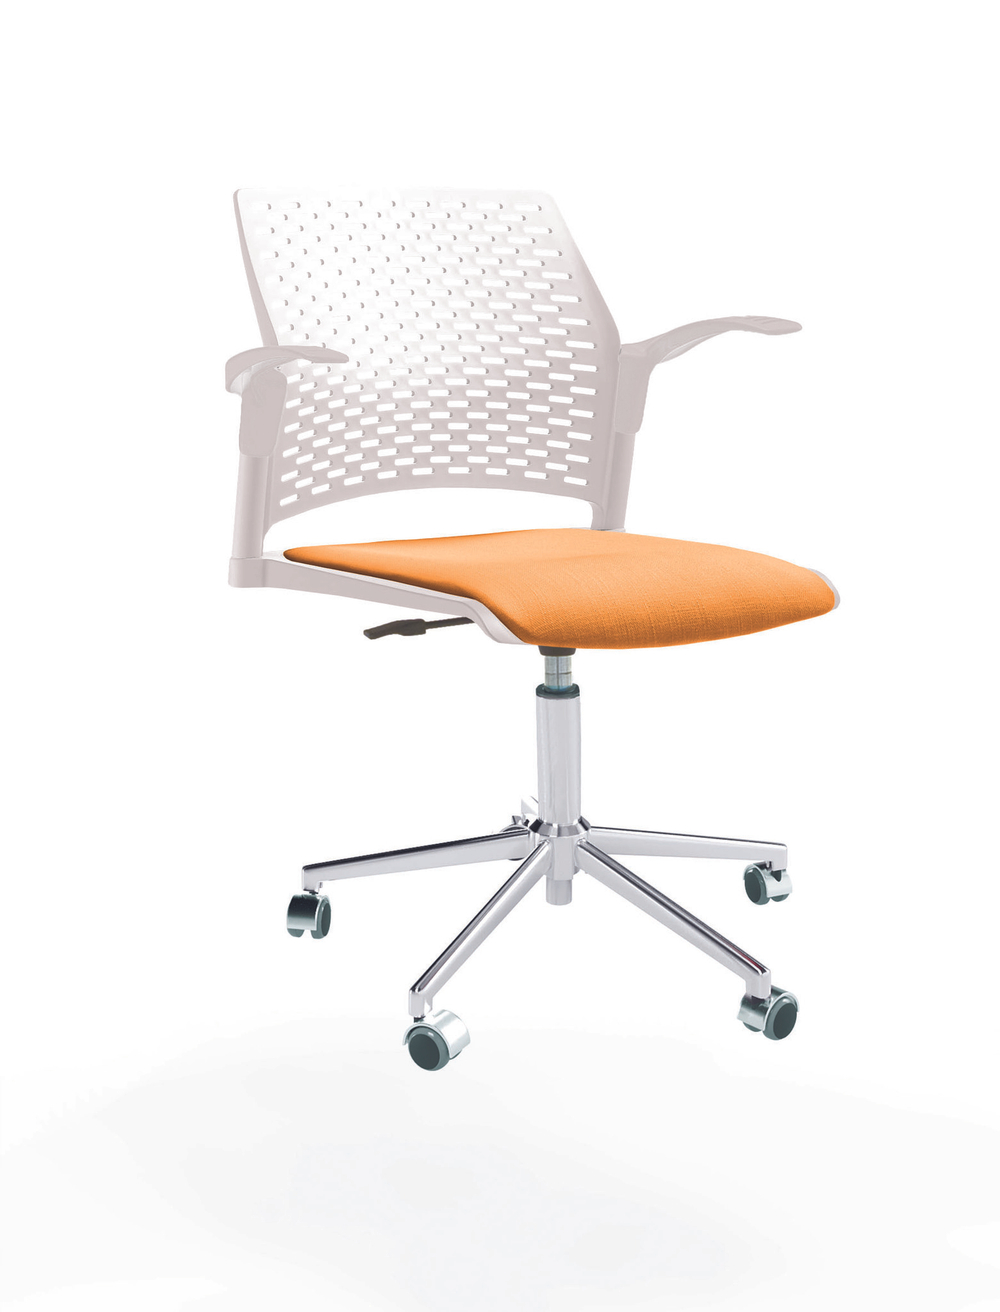 Кресло Rewind каркас хром, пластик белый, база стальная хромированная, с открытыми подлокотниками, сиденье оранжевое